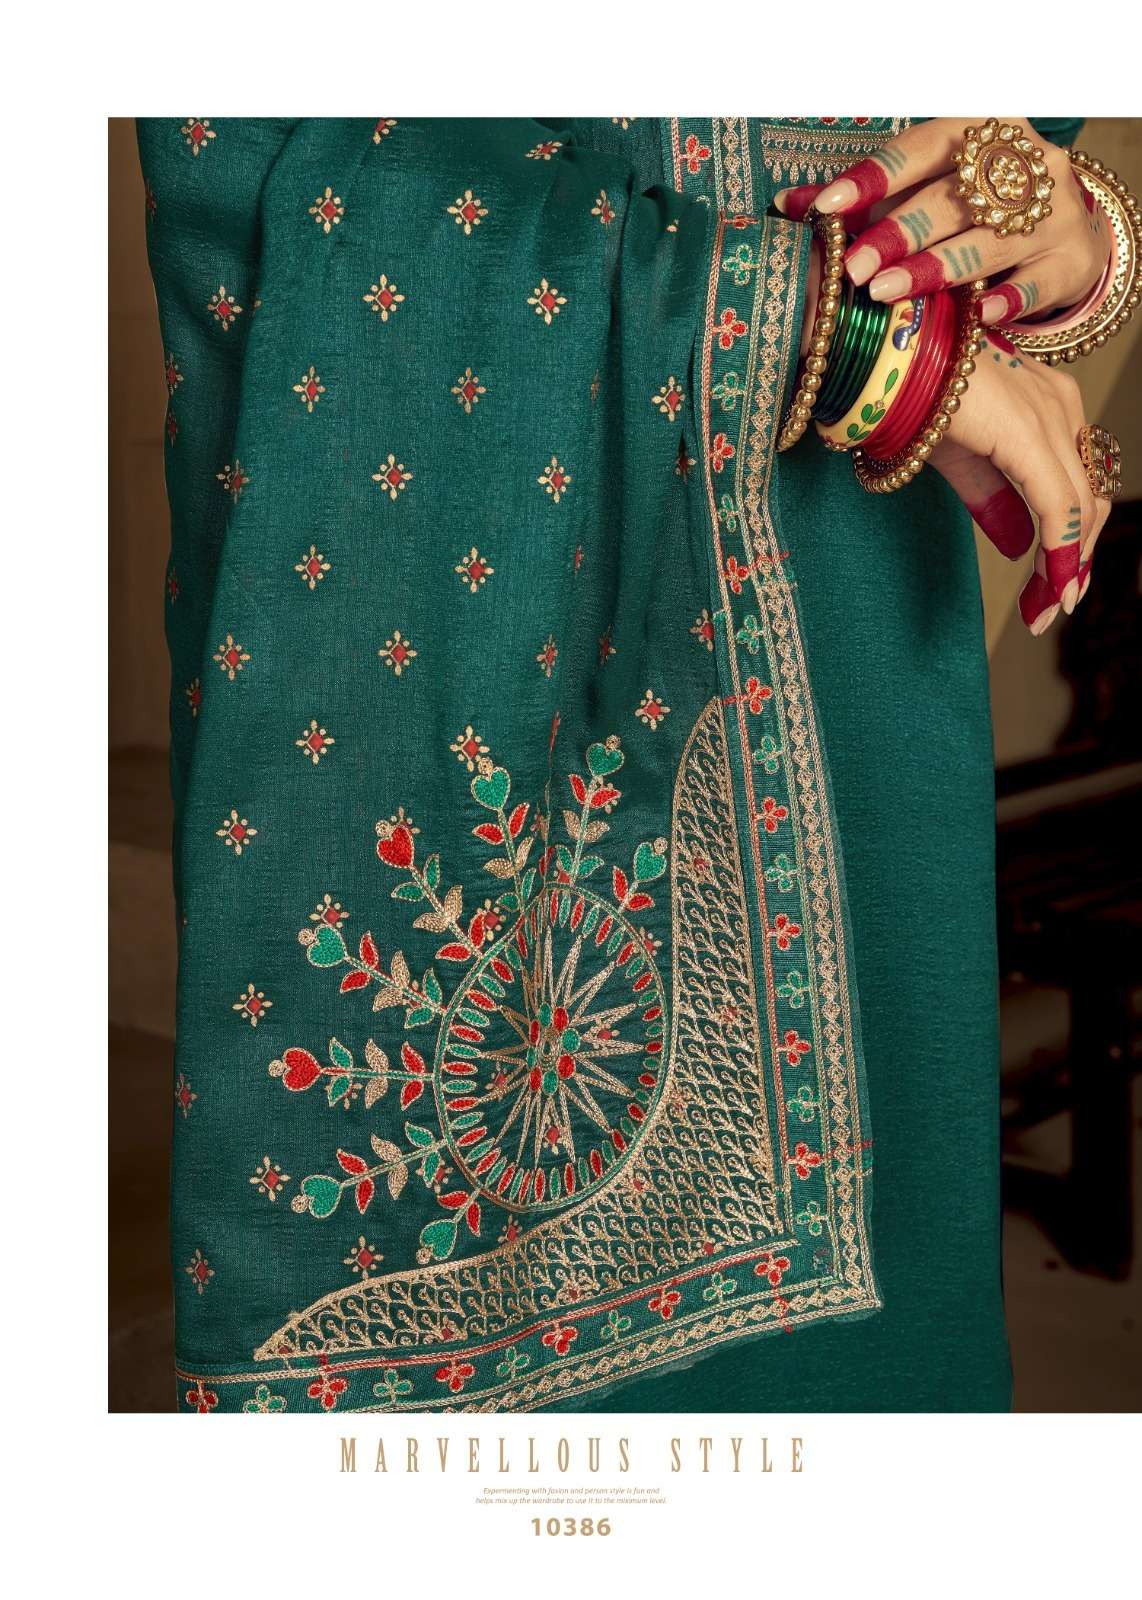 kalarang maansi 10381-10386 series indian designer salwar kameez catalogue wholesale price surat